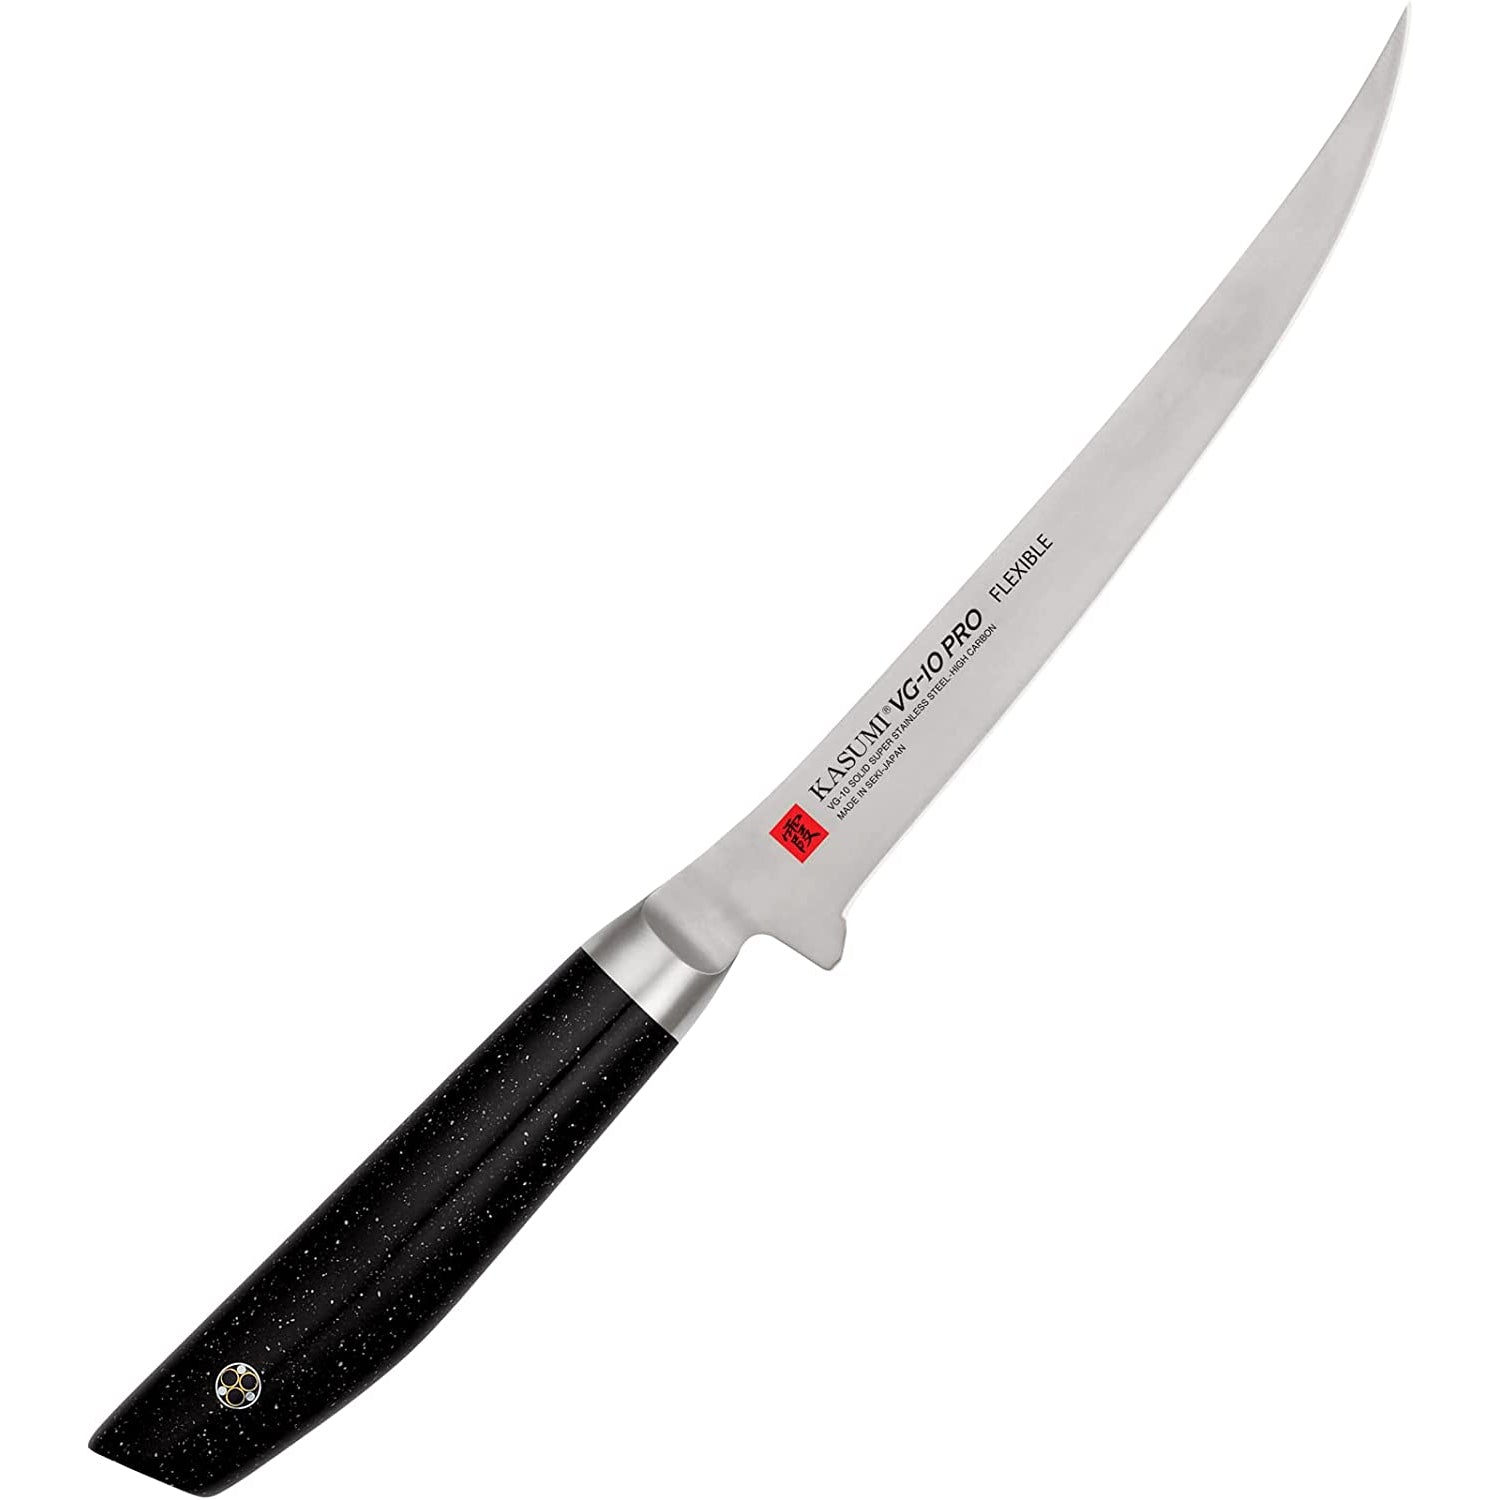 Kasumi VG10 Pro Fillet Knife K-56018